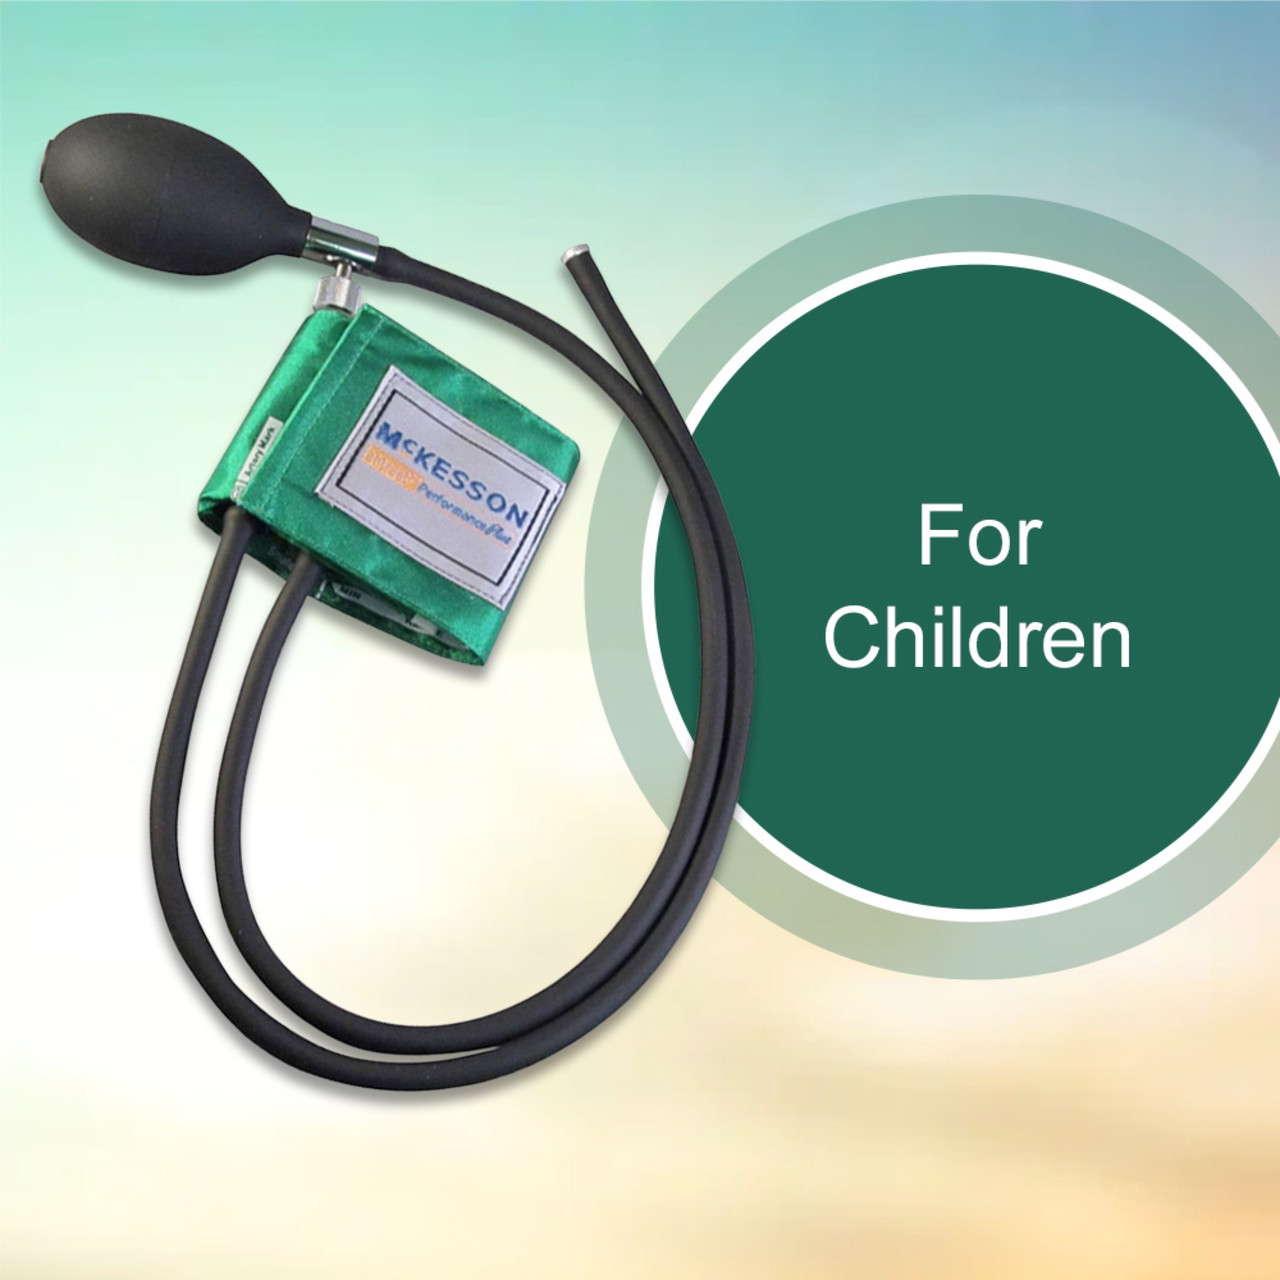 McKesson LUMEON Green Child Blood Pressure System, 13.9 cm - 19.5